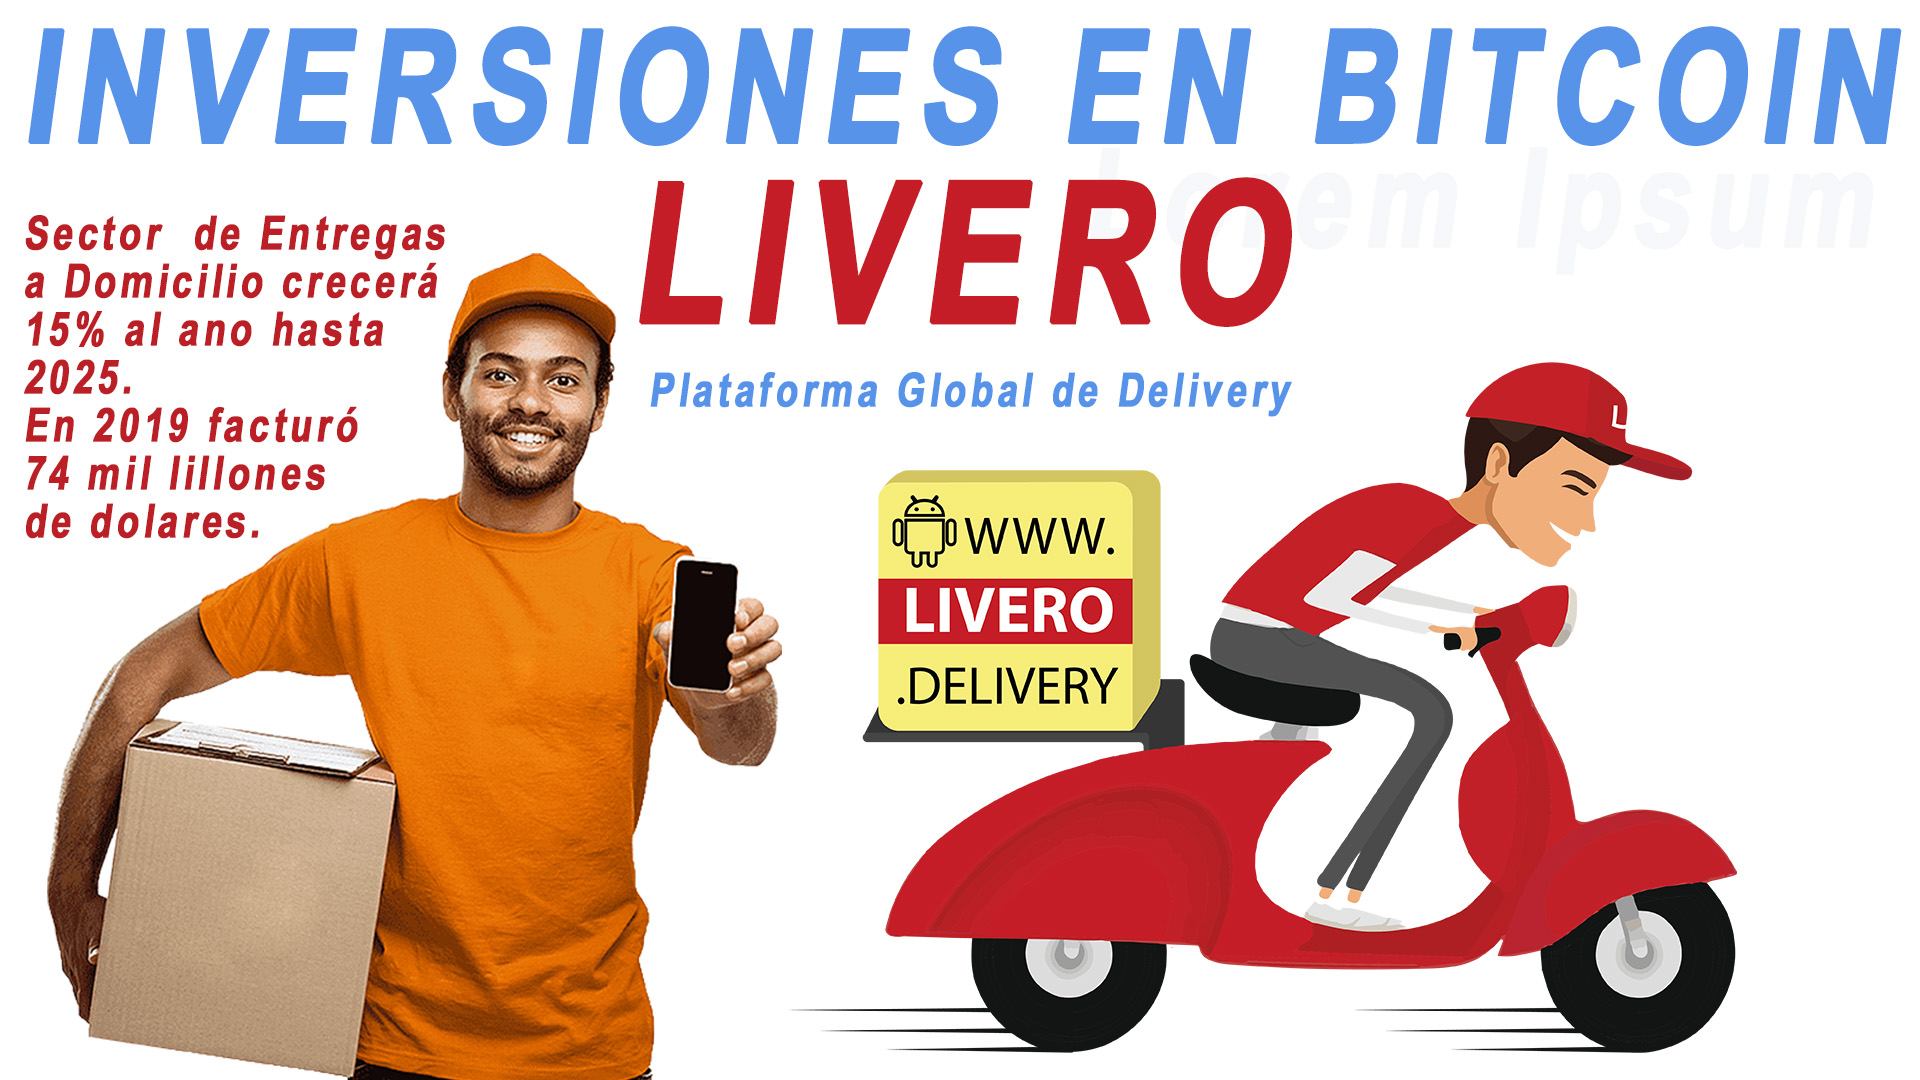 Livero.delivery acepta inversiones en bitcoins